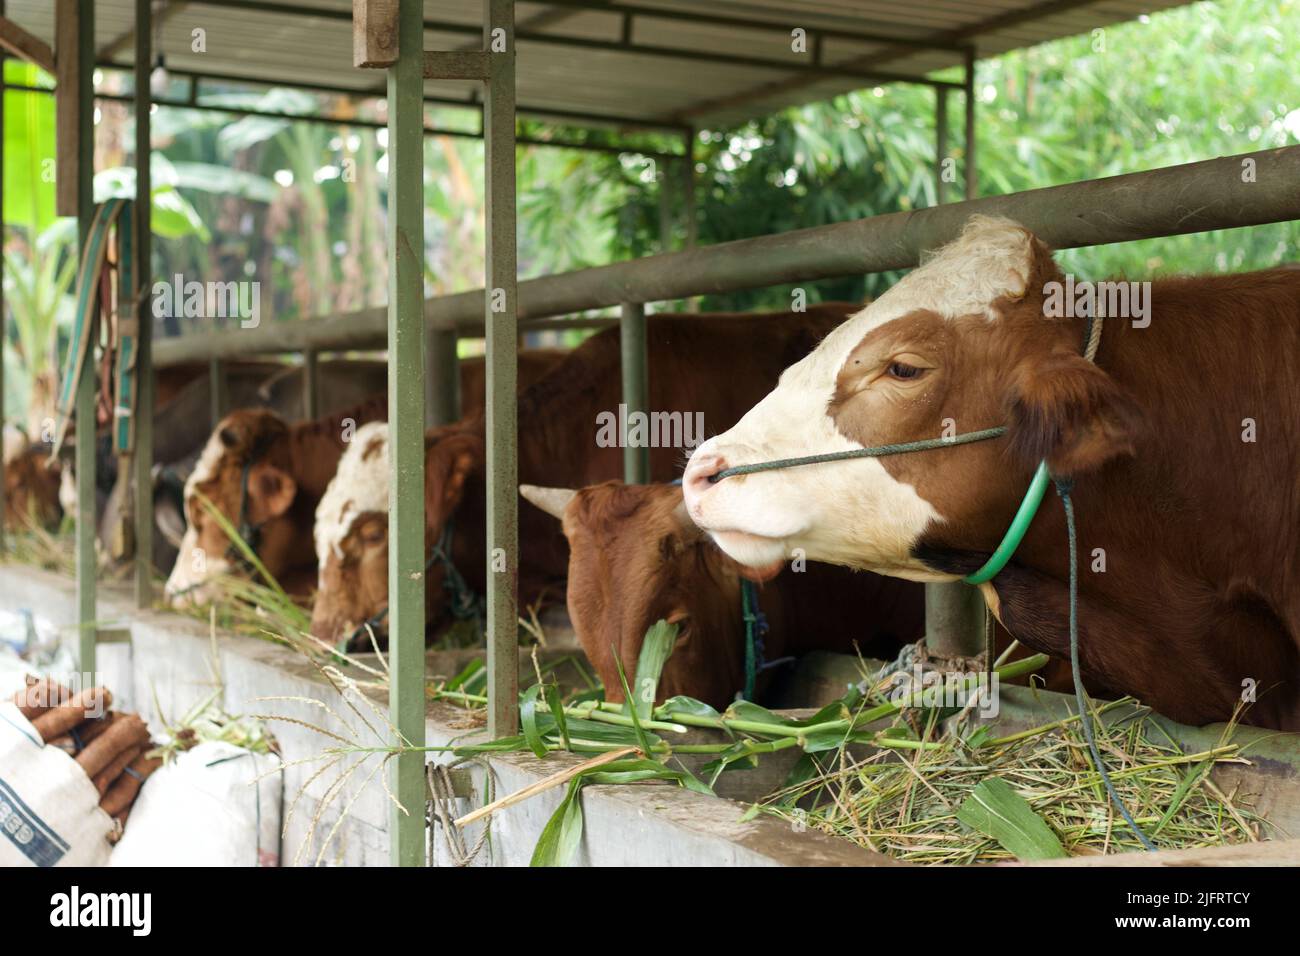 Bétail - des groupes de vaches ou de bovins sont préparés pour des sacrifices sur Eid al-Adha ou Eid al-qUrban. Taureau BOS. Banque D'Images